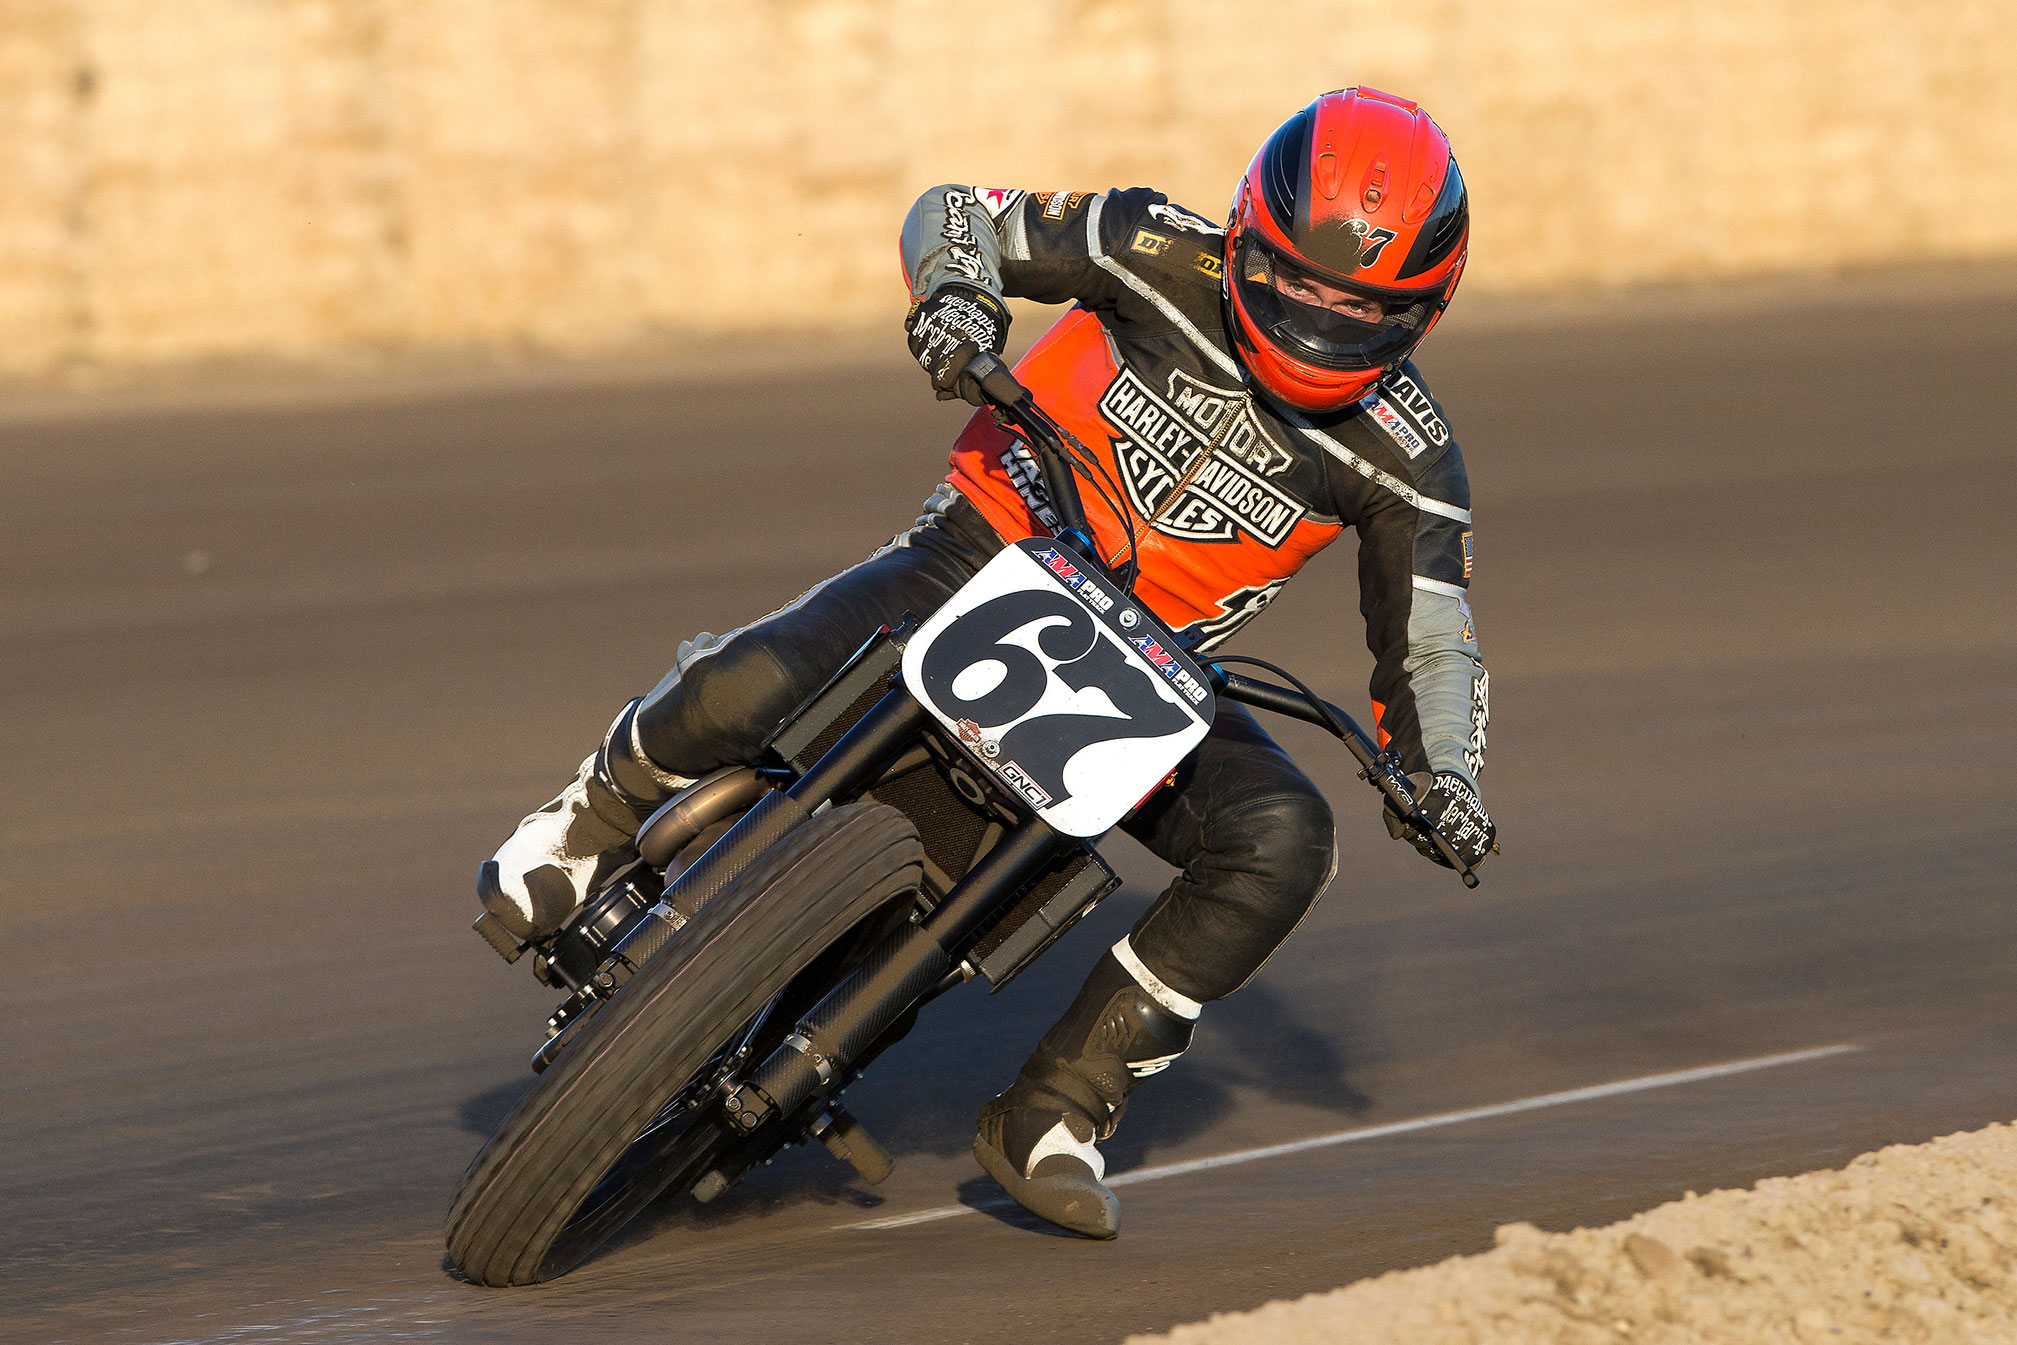 Harley-Davidson XG750R Backgrounds on Wallpapers Vista